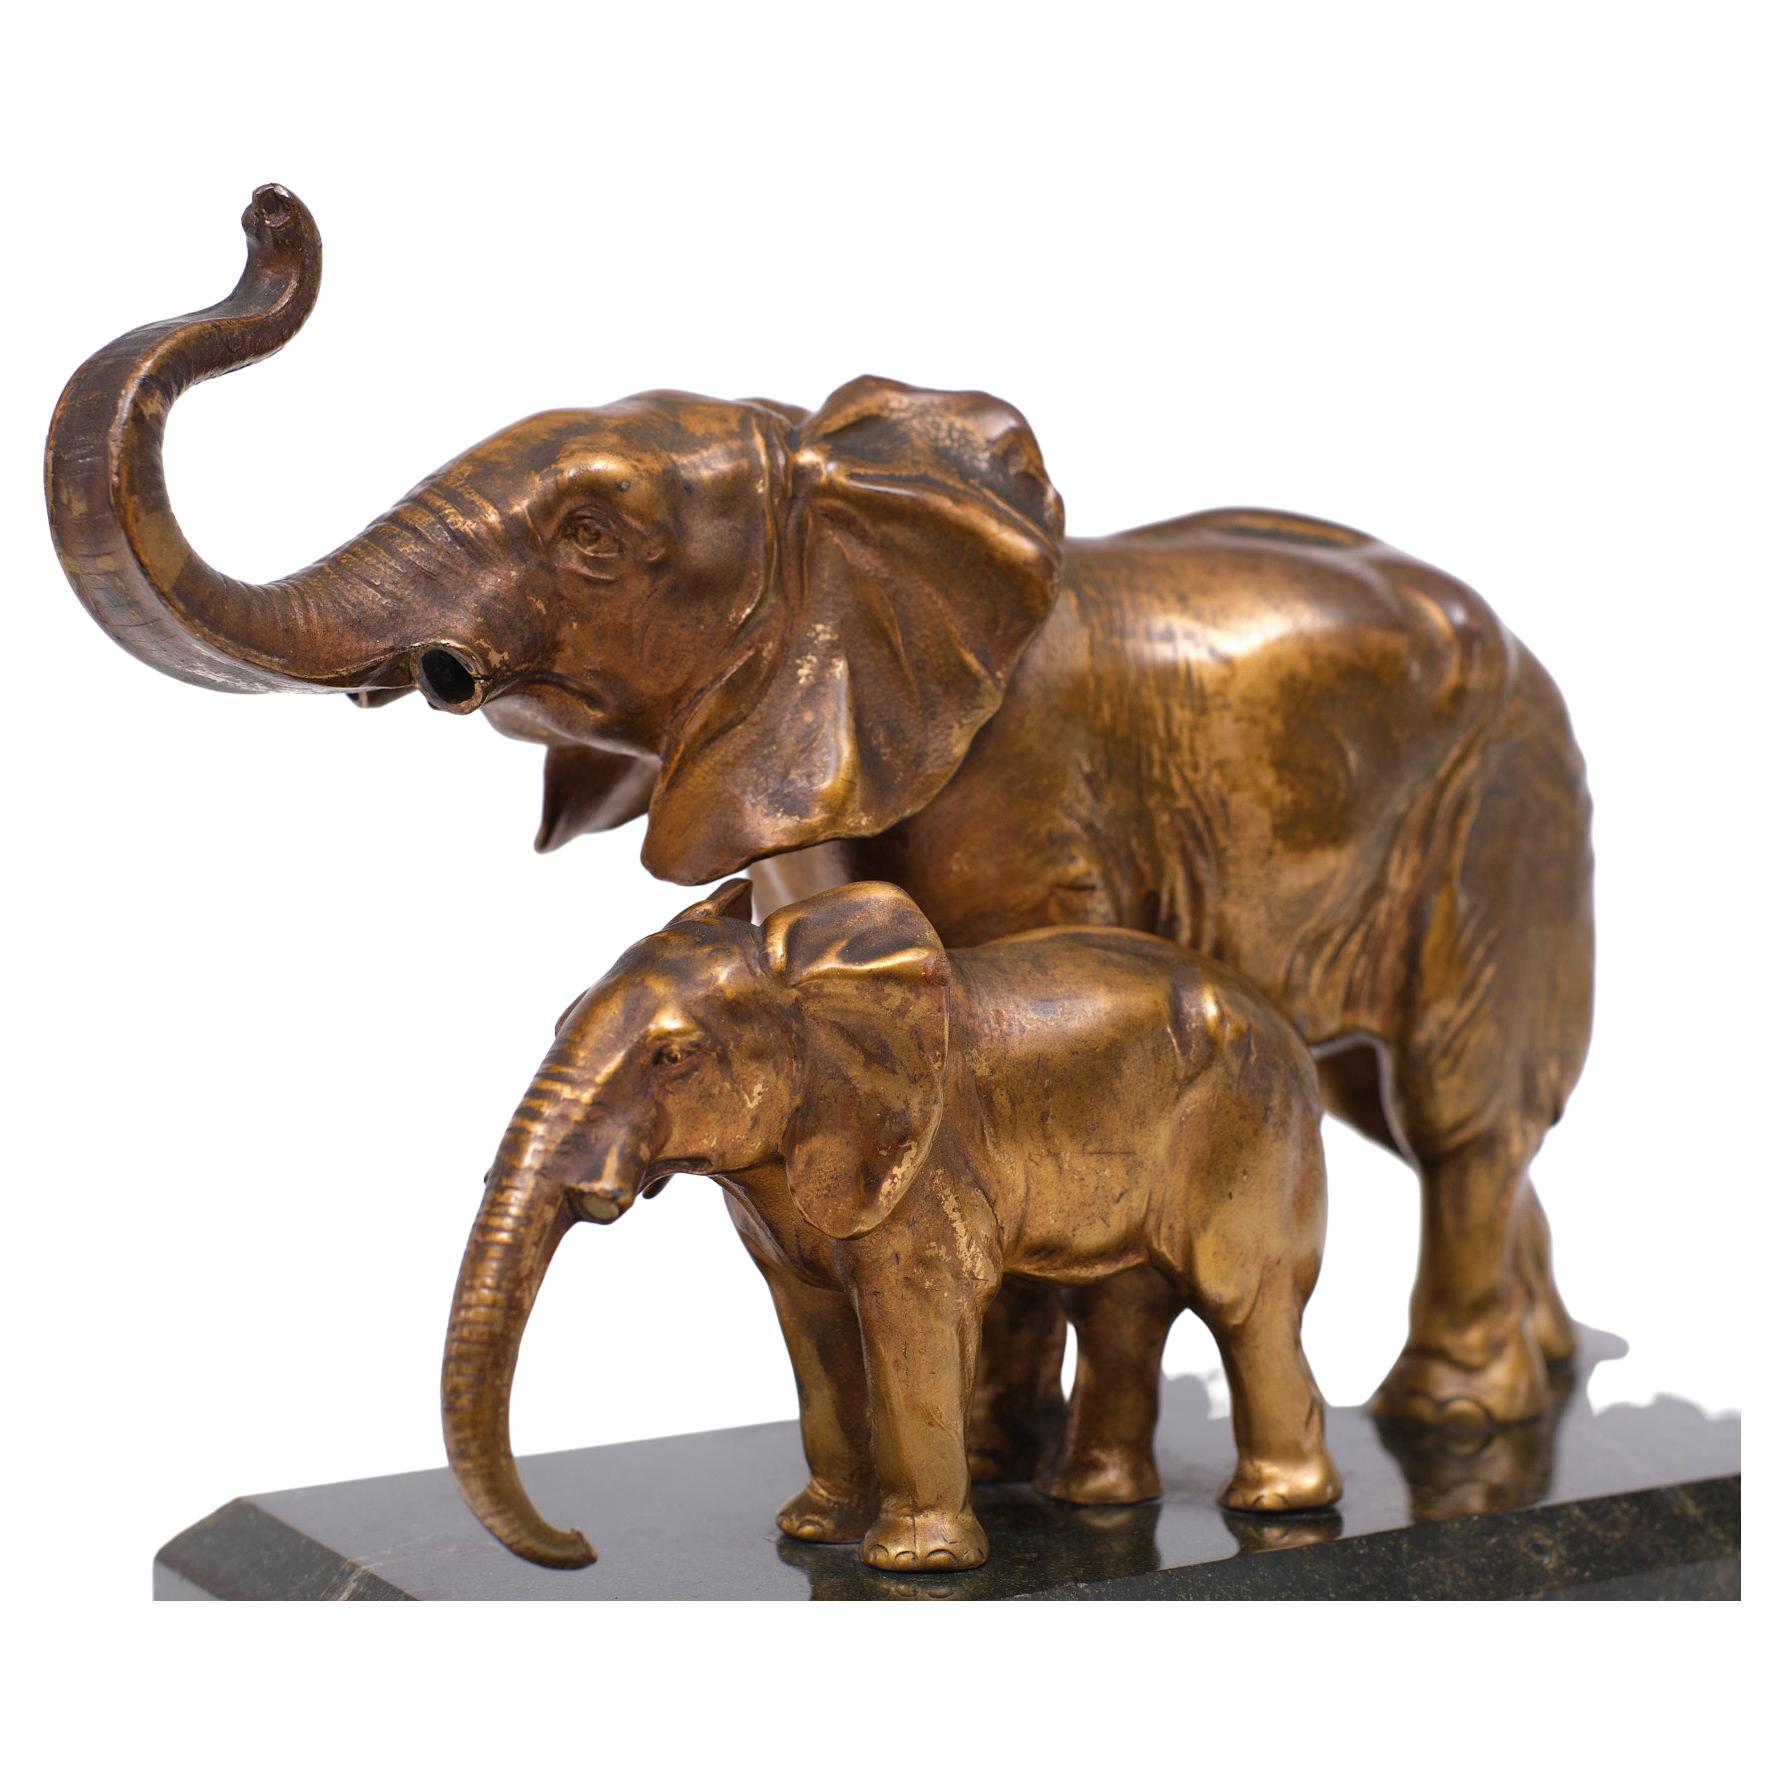 Mutter und Kind .dieses Paar von Elefantenfiguren ,Muss dieses Stück lieben, außer schön 
Patine, original antike Goldfarbe. Steht auf einem Sockel aus schwarzem Marmor, Art Deco 1925.
Perfekt modelliert. Ohne seine elfenbeinernen Stoßzähne .  

 

